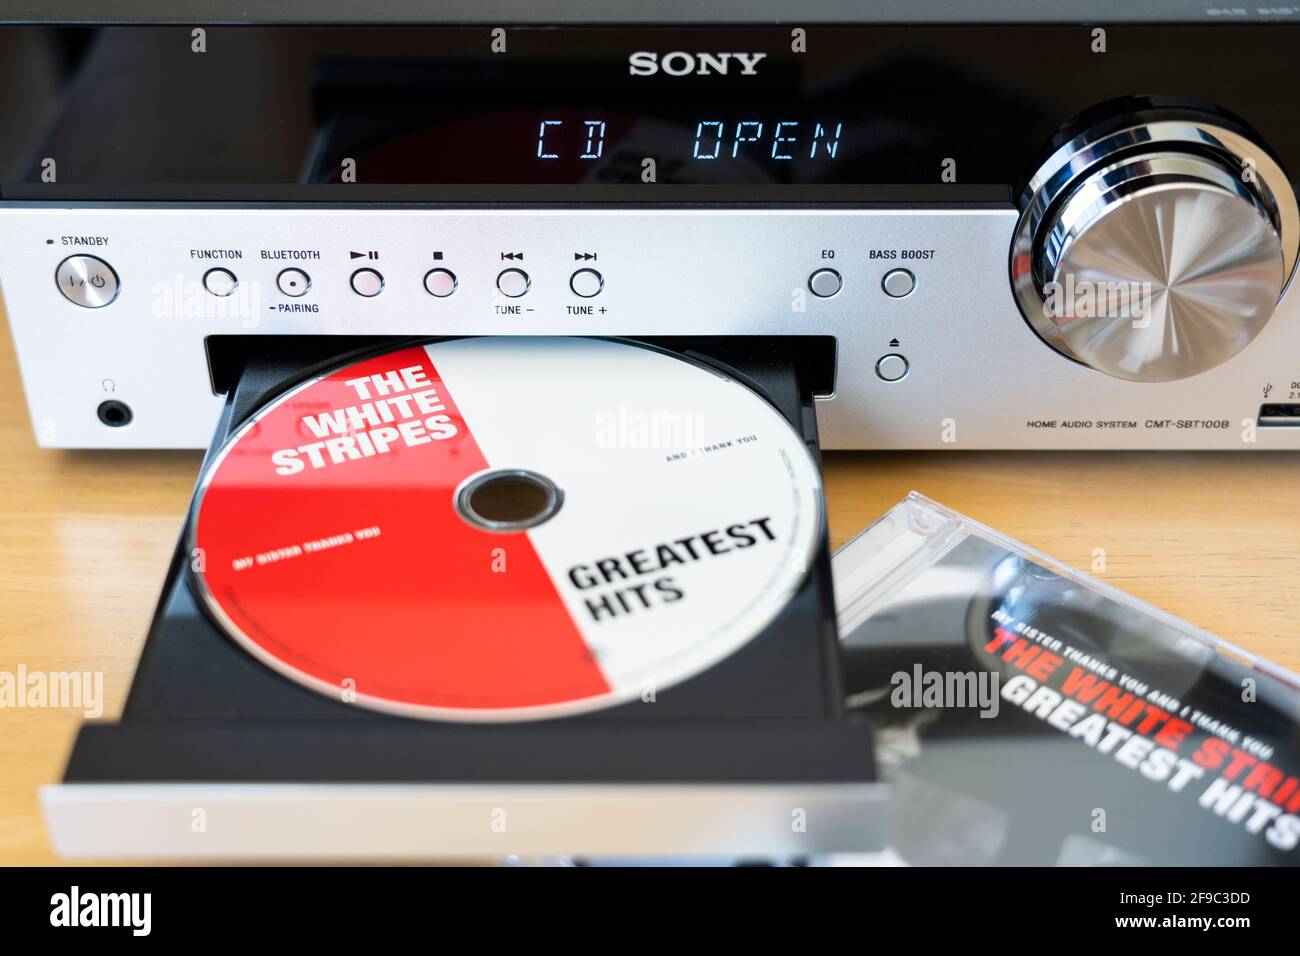 Un vassoio CD aperto contenente un numero maggiore di strisce bianche CD in un impianto stereo domestico/Hi-Fi Sony con un display digitale (incentrato sull'hi-fi) Foto Stock